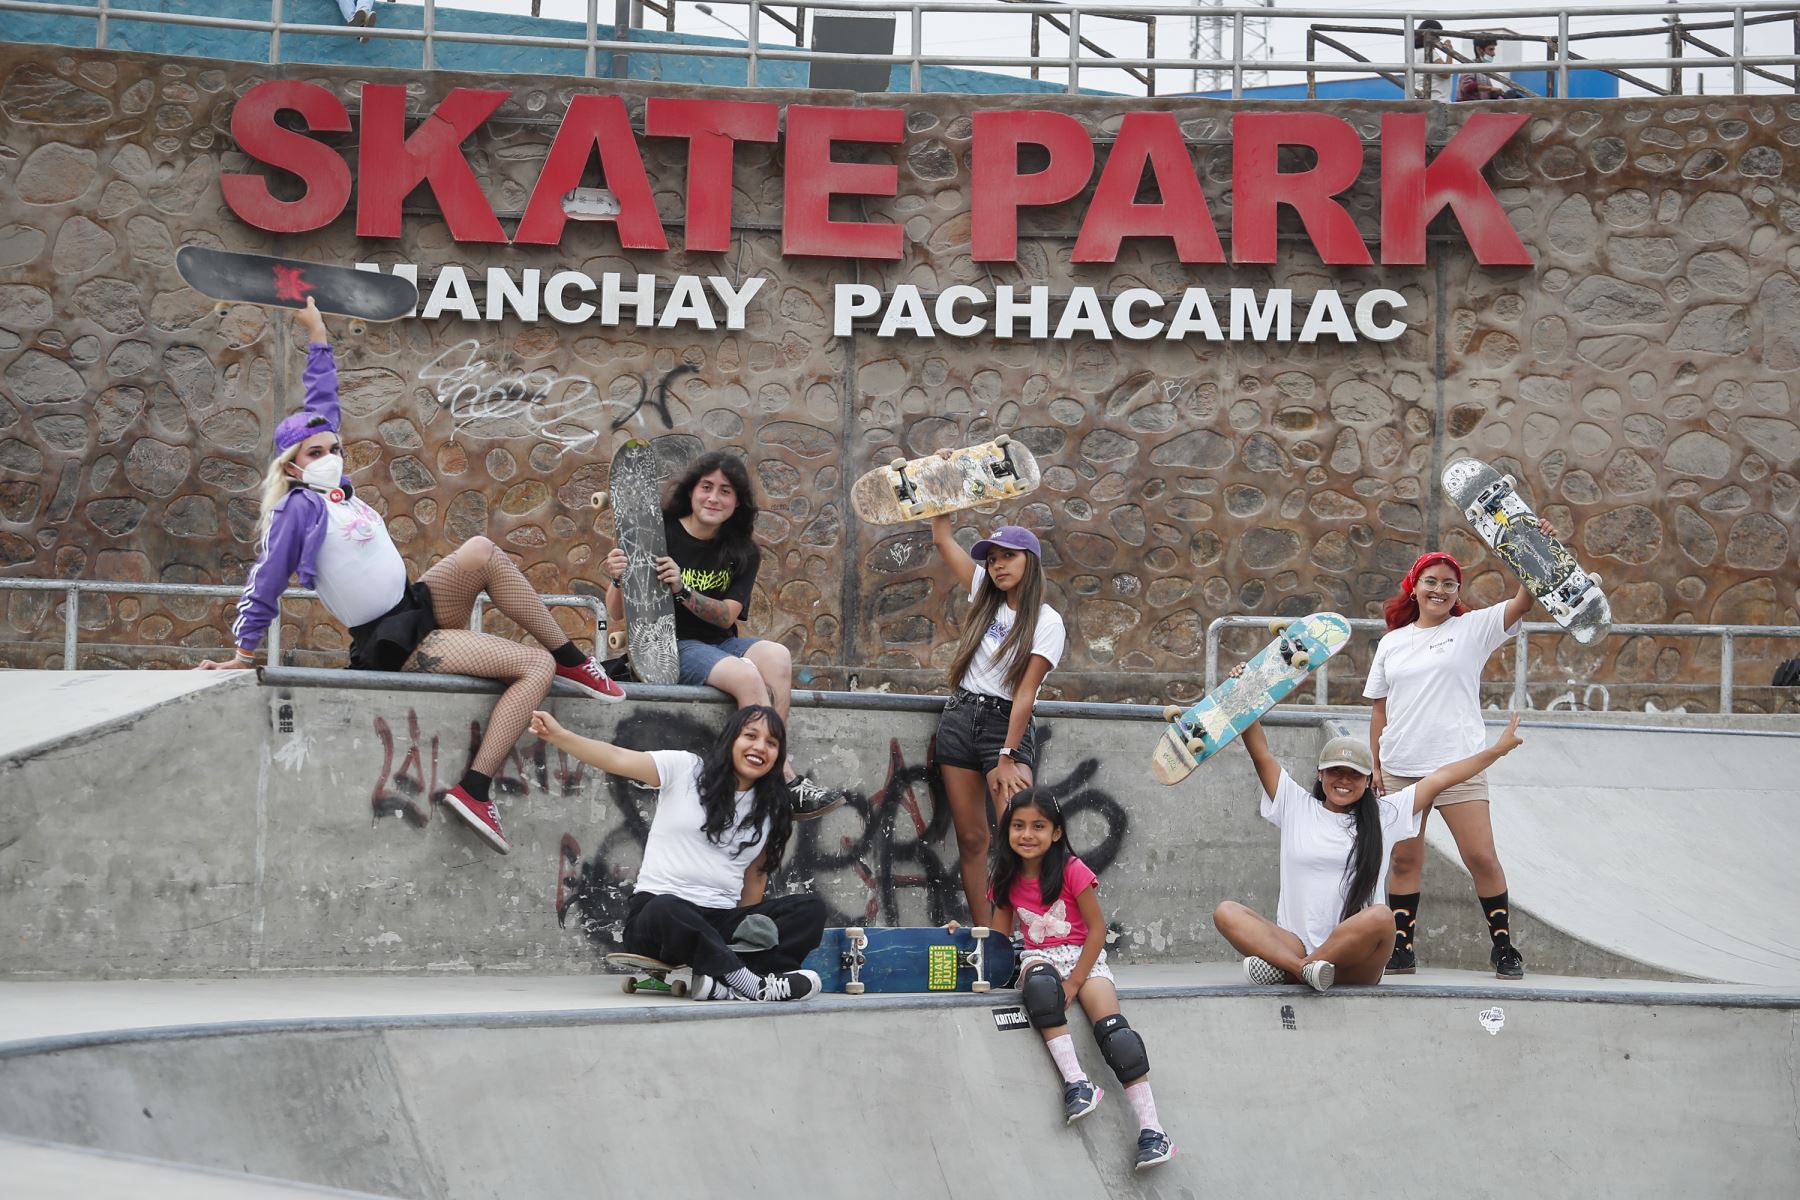 Un grupo de jóvenes rompe prejuicios y toma las patinetas como una forma de libertad en tiempos de pandemia. Una comunidad que se hace llamar “Chicas en Llamas” se empodera a través del skateboarding. Foto: ANDINA/Renato Pajuelo